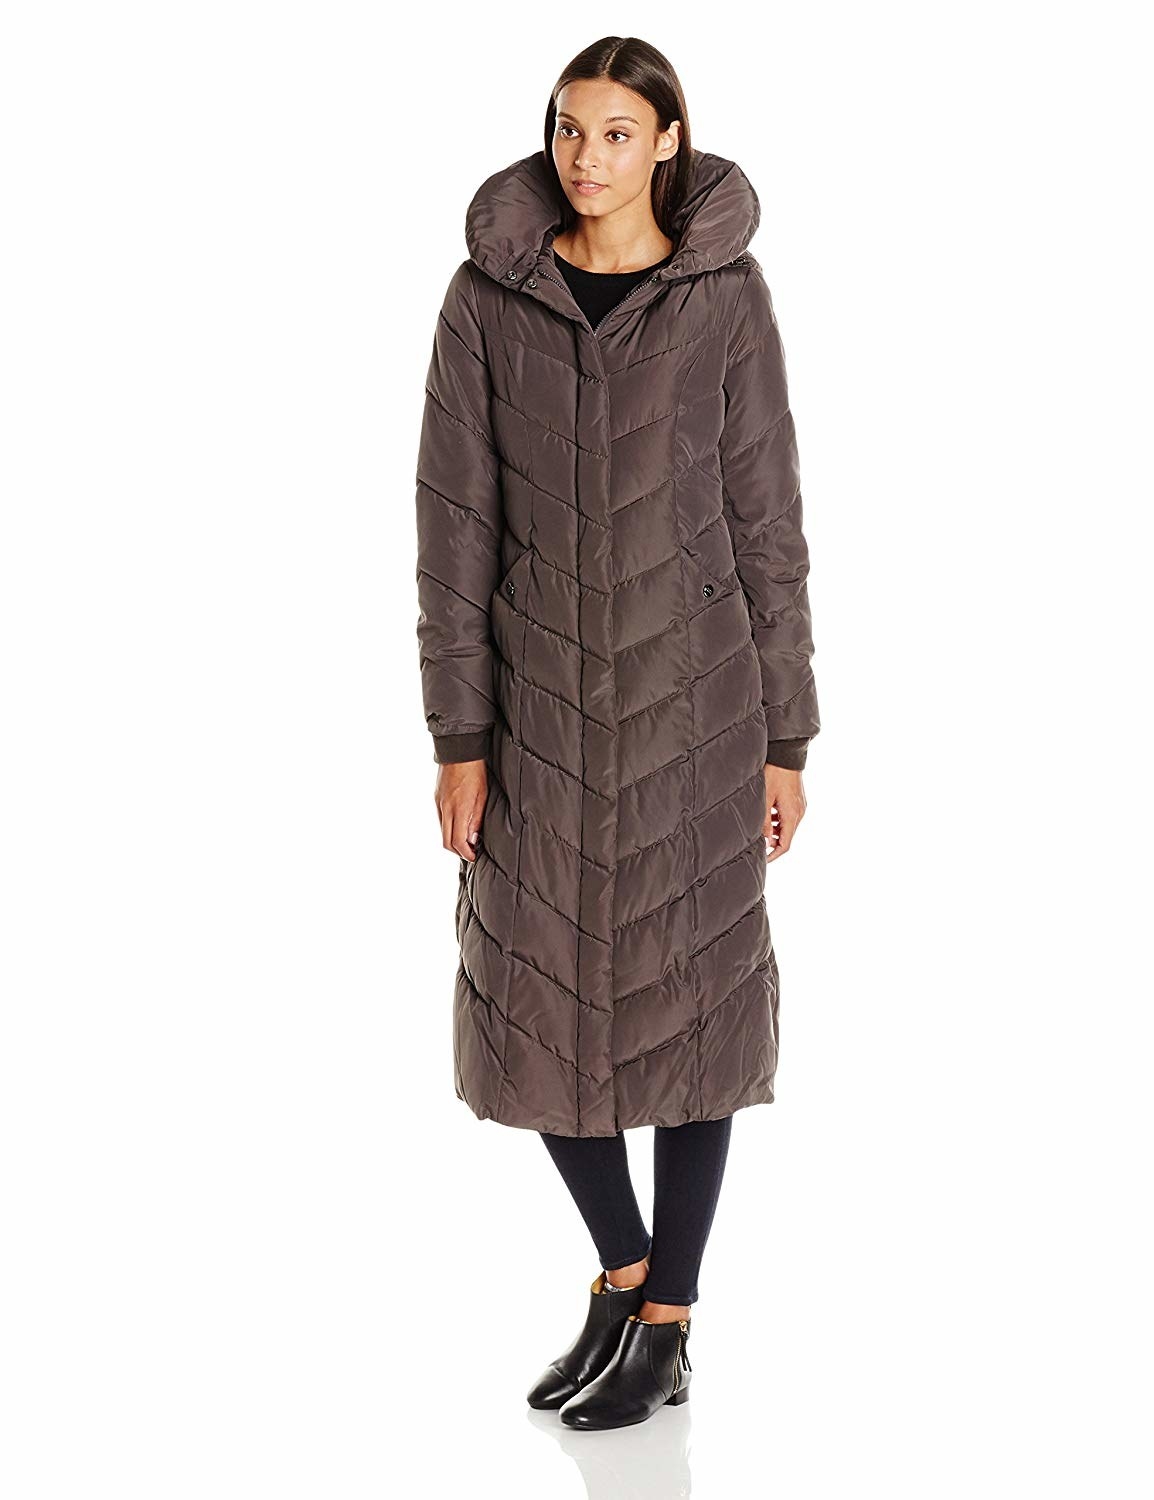 Women Ladies Winter Fleece Lined Parka Hooded Jacket Coat SIZE 6-20 PLUS SIZE UK 